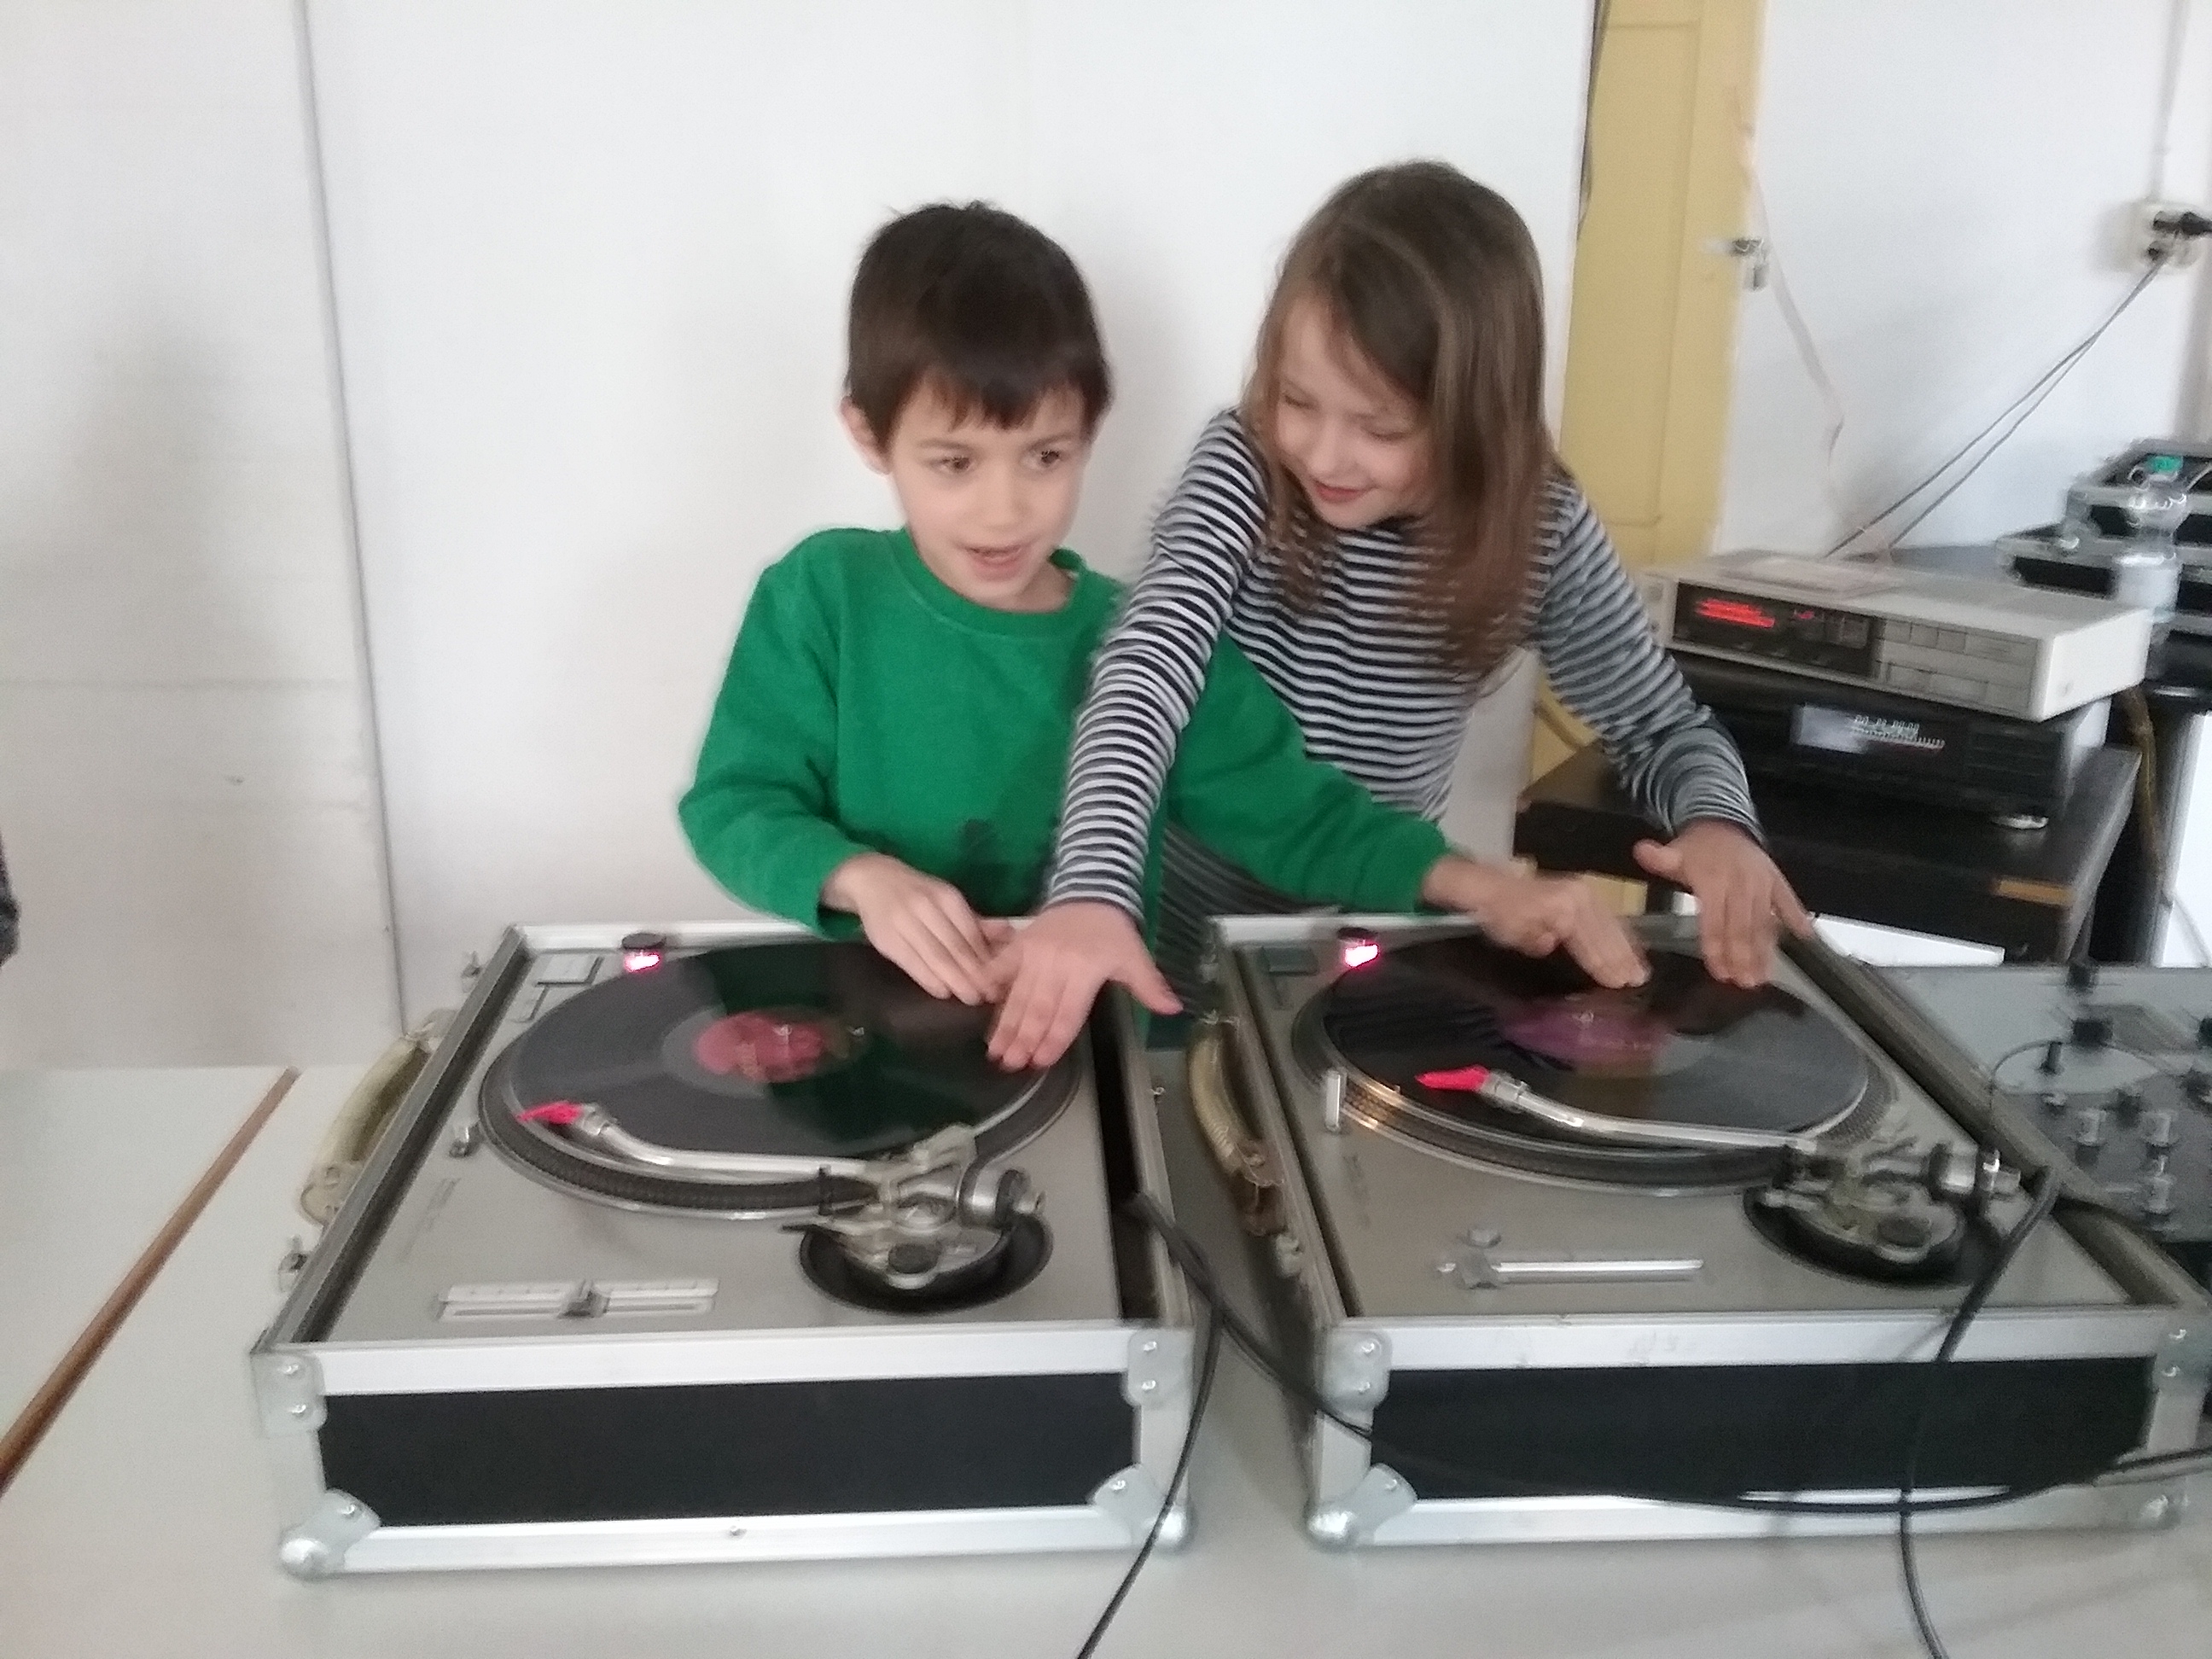 DJ School 38 
DJ Kurse für Kinder, Jugendliche und Erwachsene..